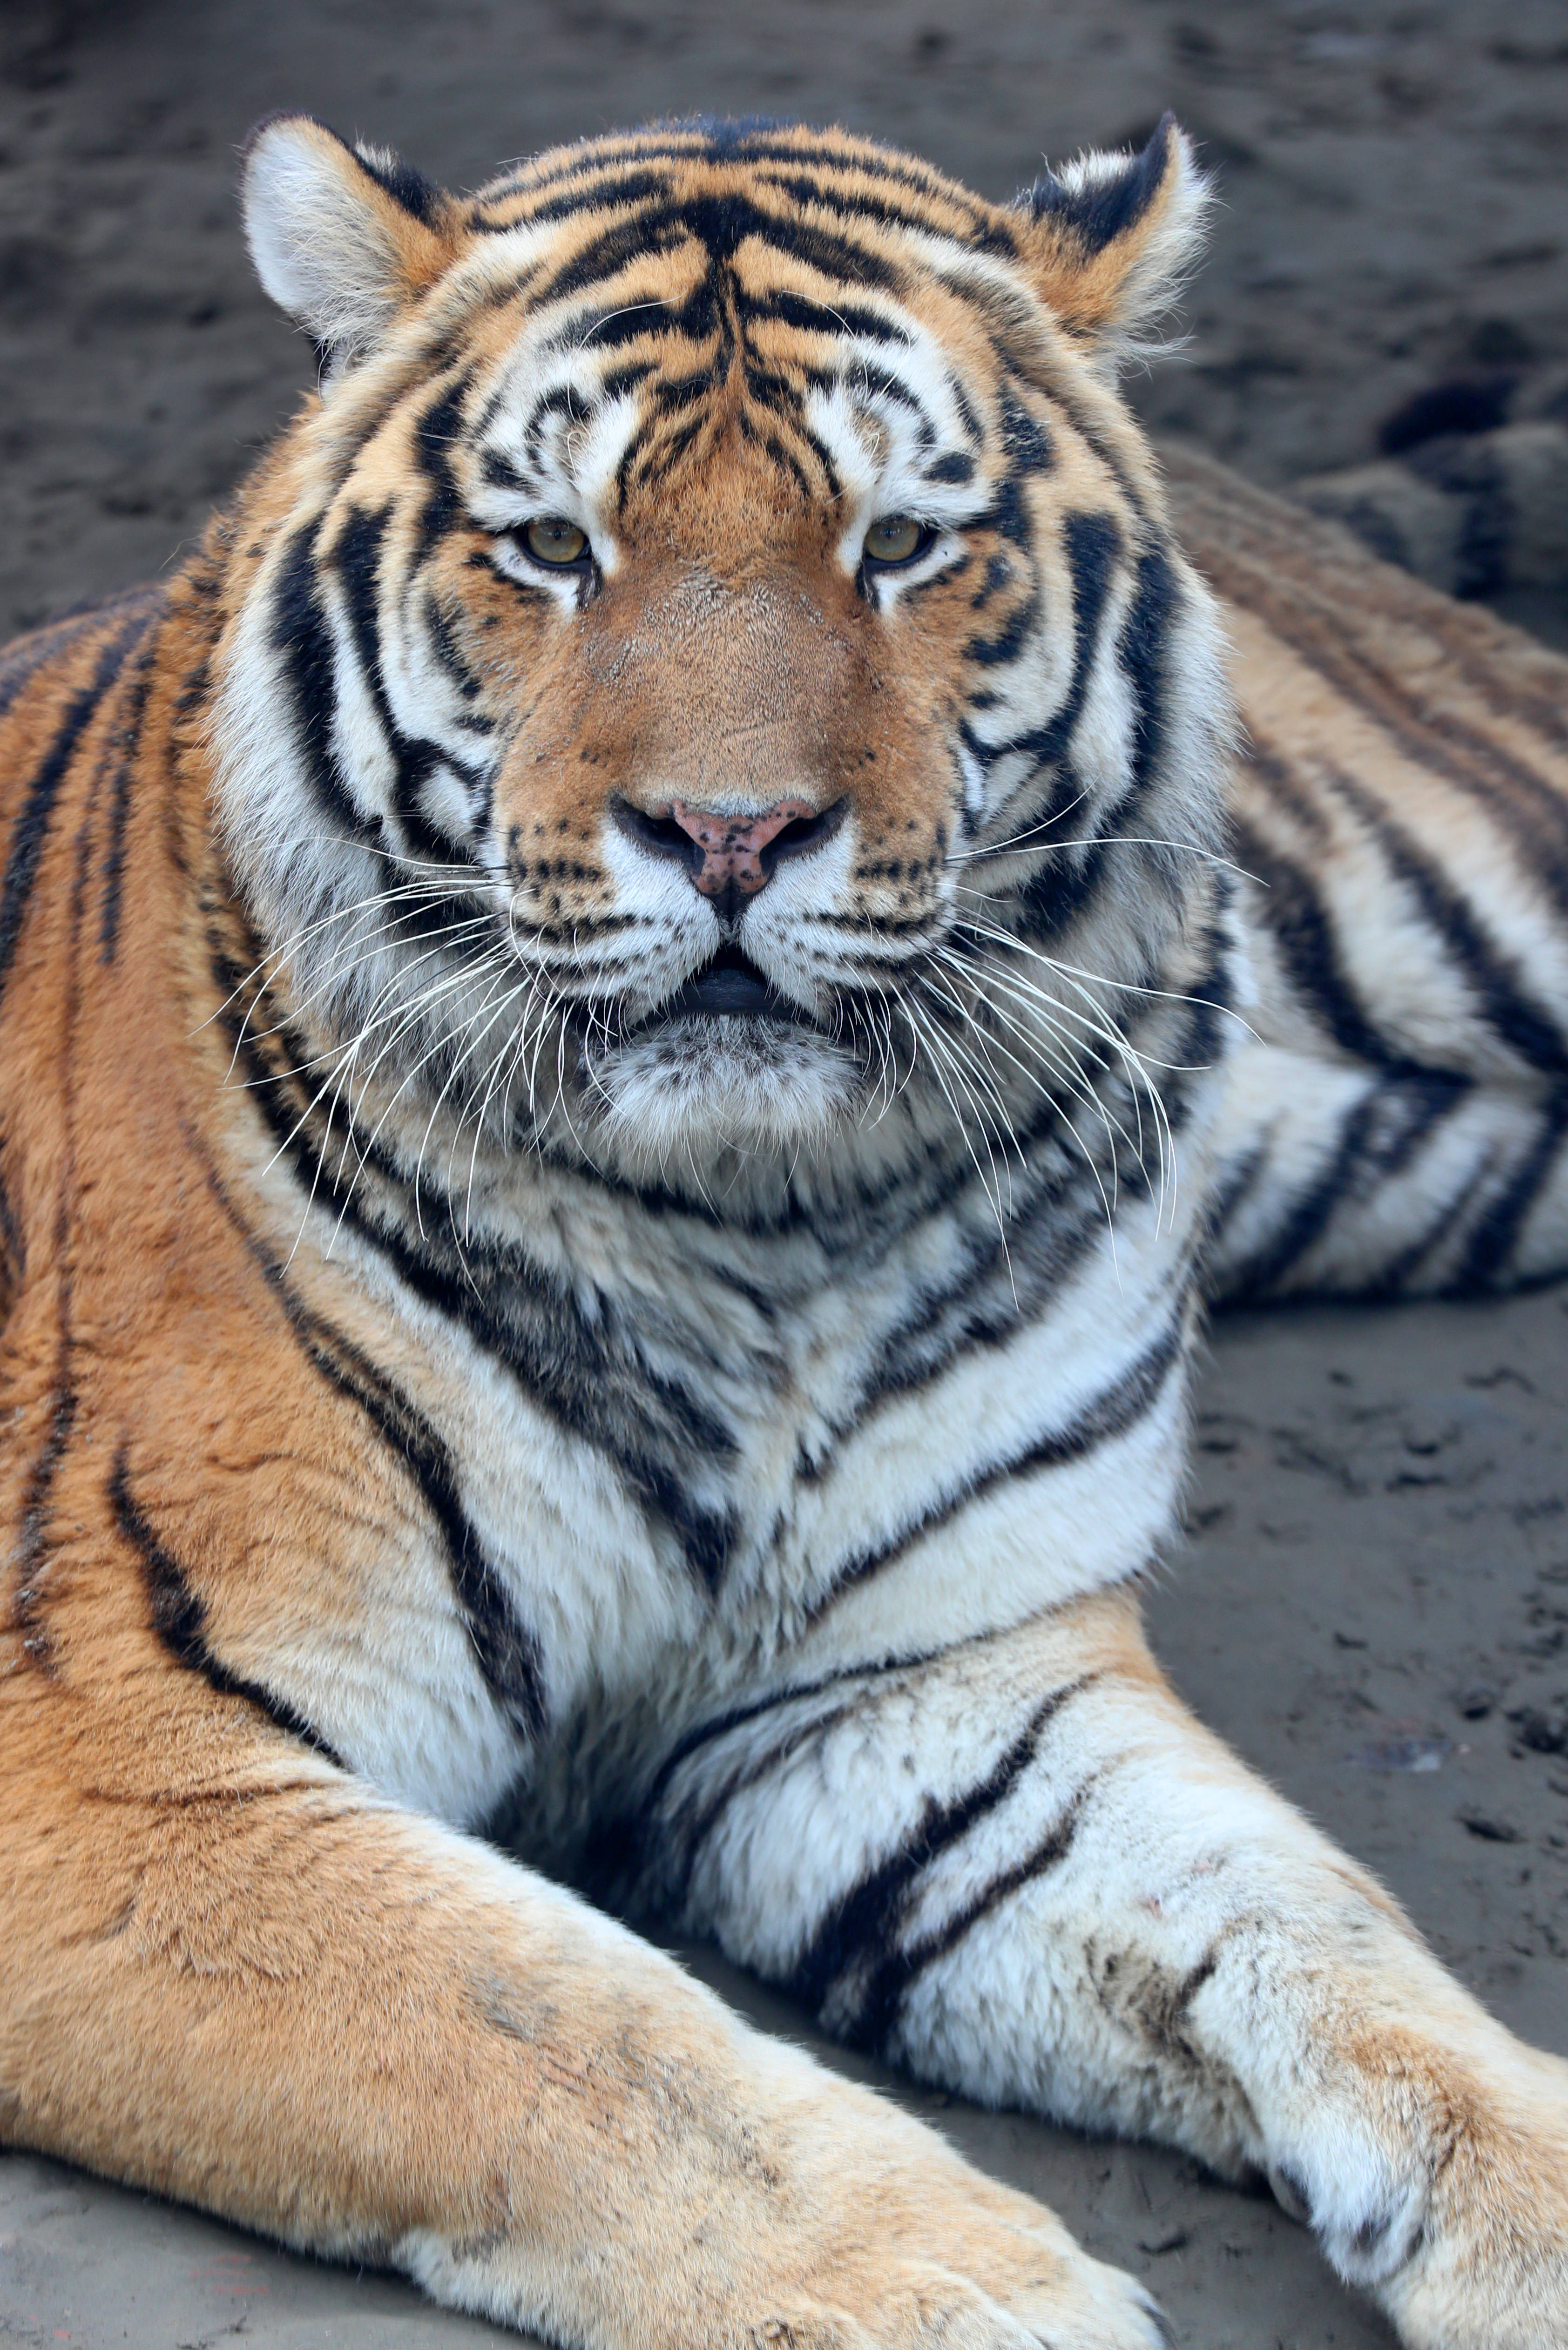 原创孟加拉白虎东北虎江苏南通森林野生动物园群虎亮相迎虎年